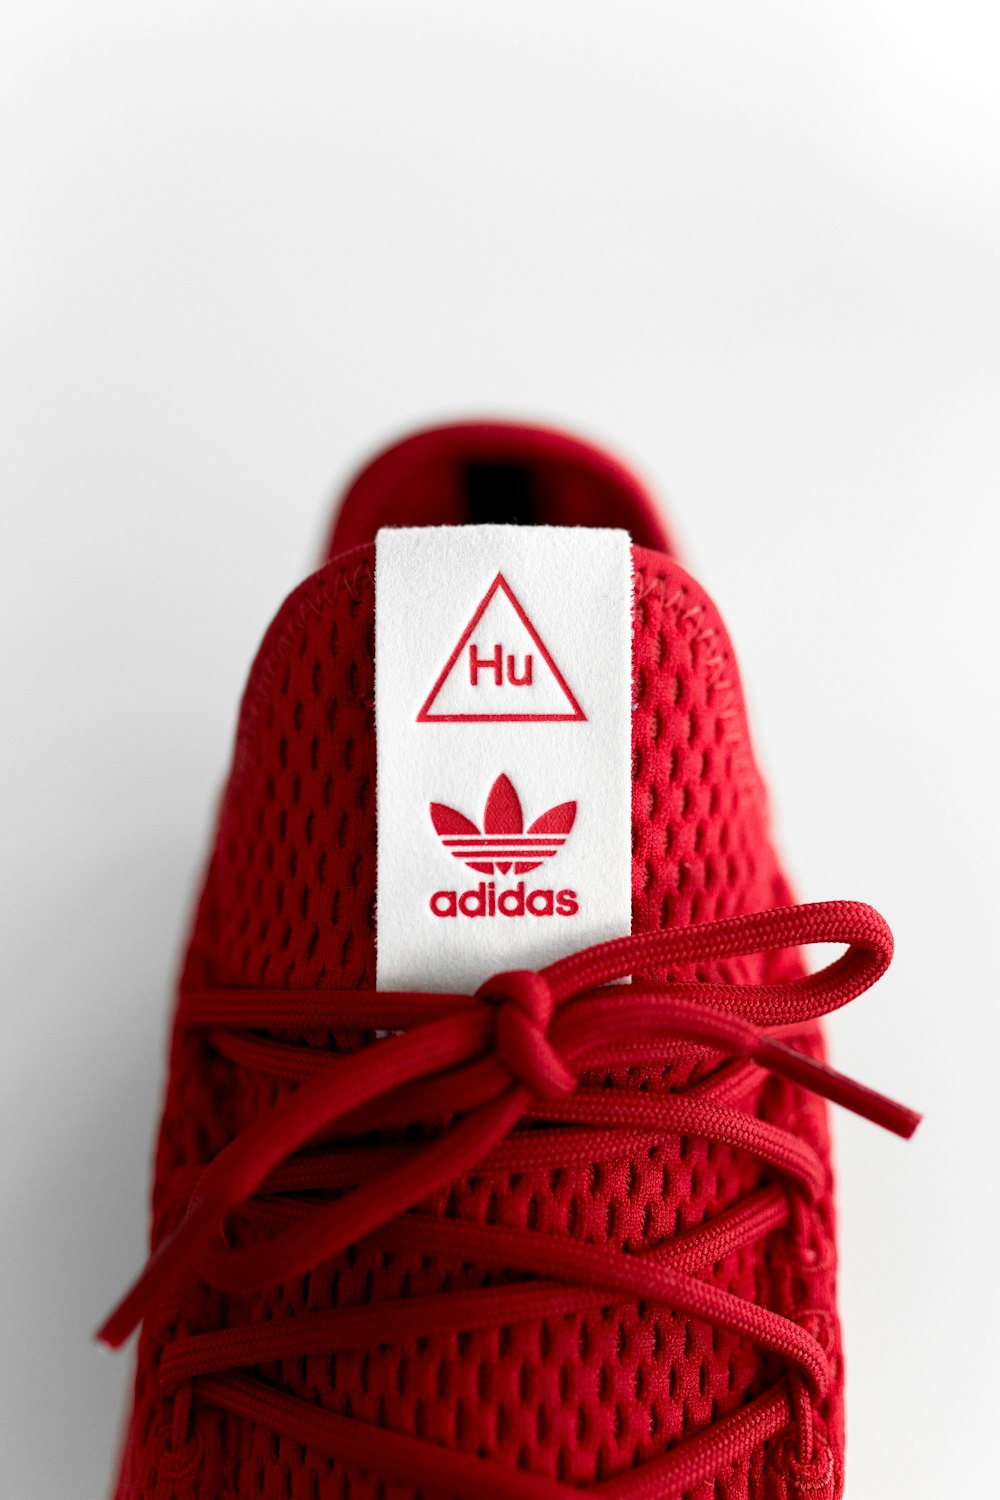 Foto Zapatillas adidas rojas sin emparejar – Imagen Rojo gratis en Unsplash